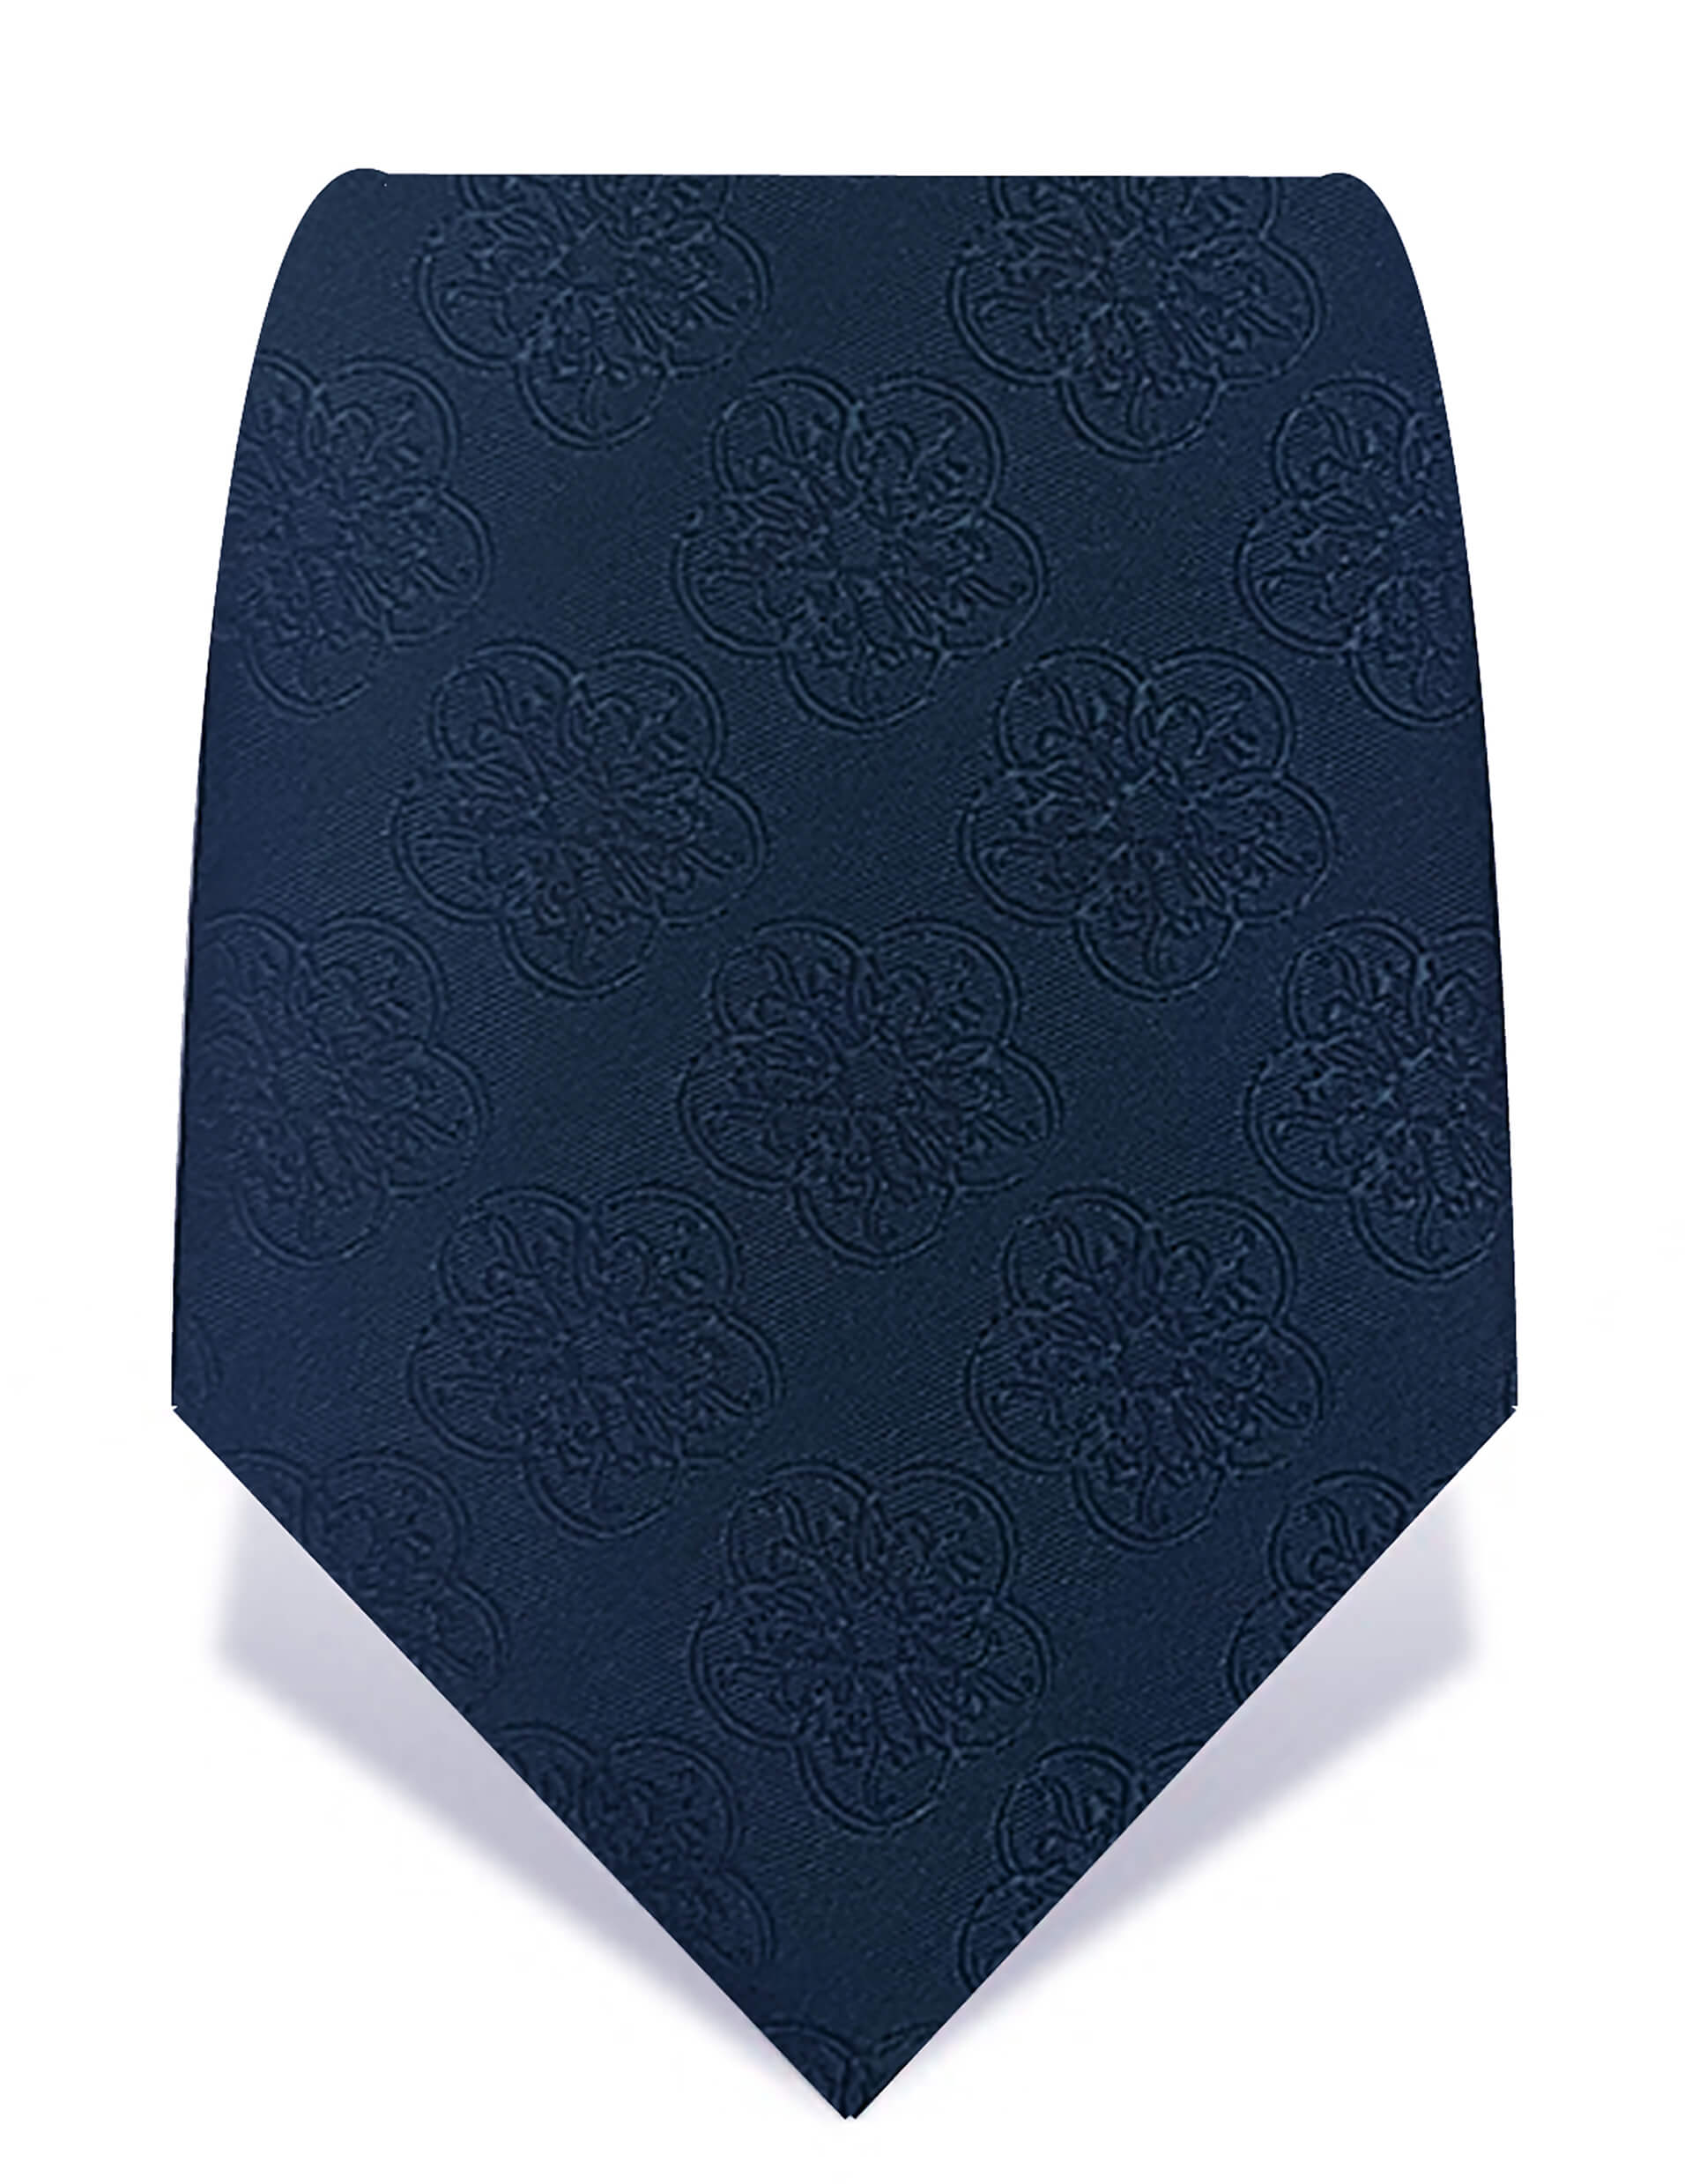 navy tie for men
